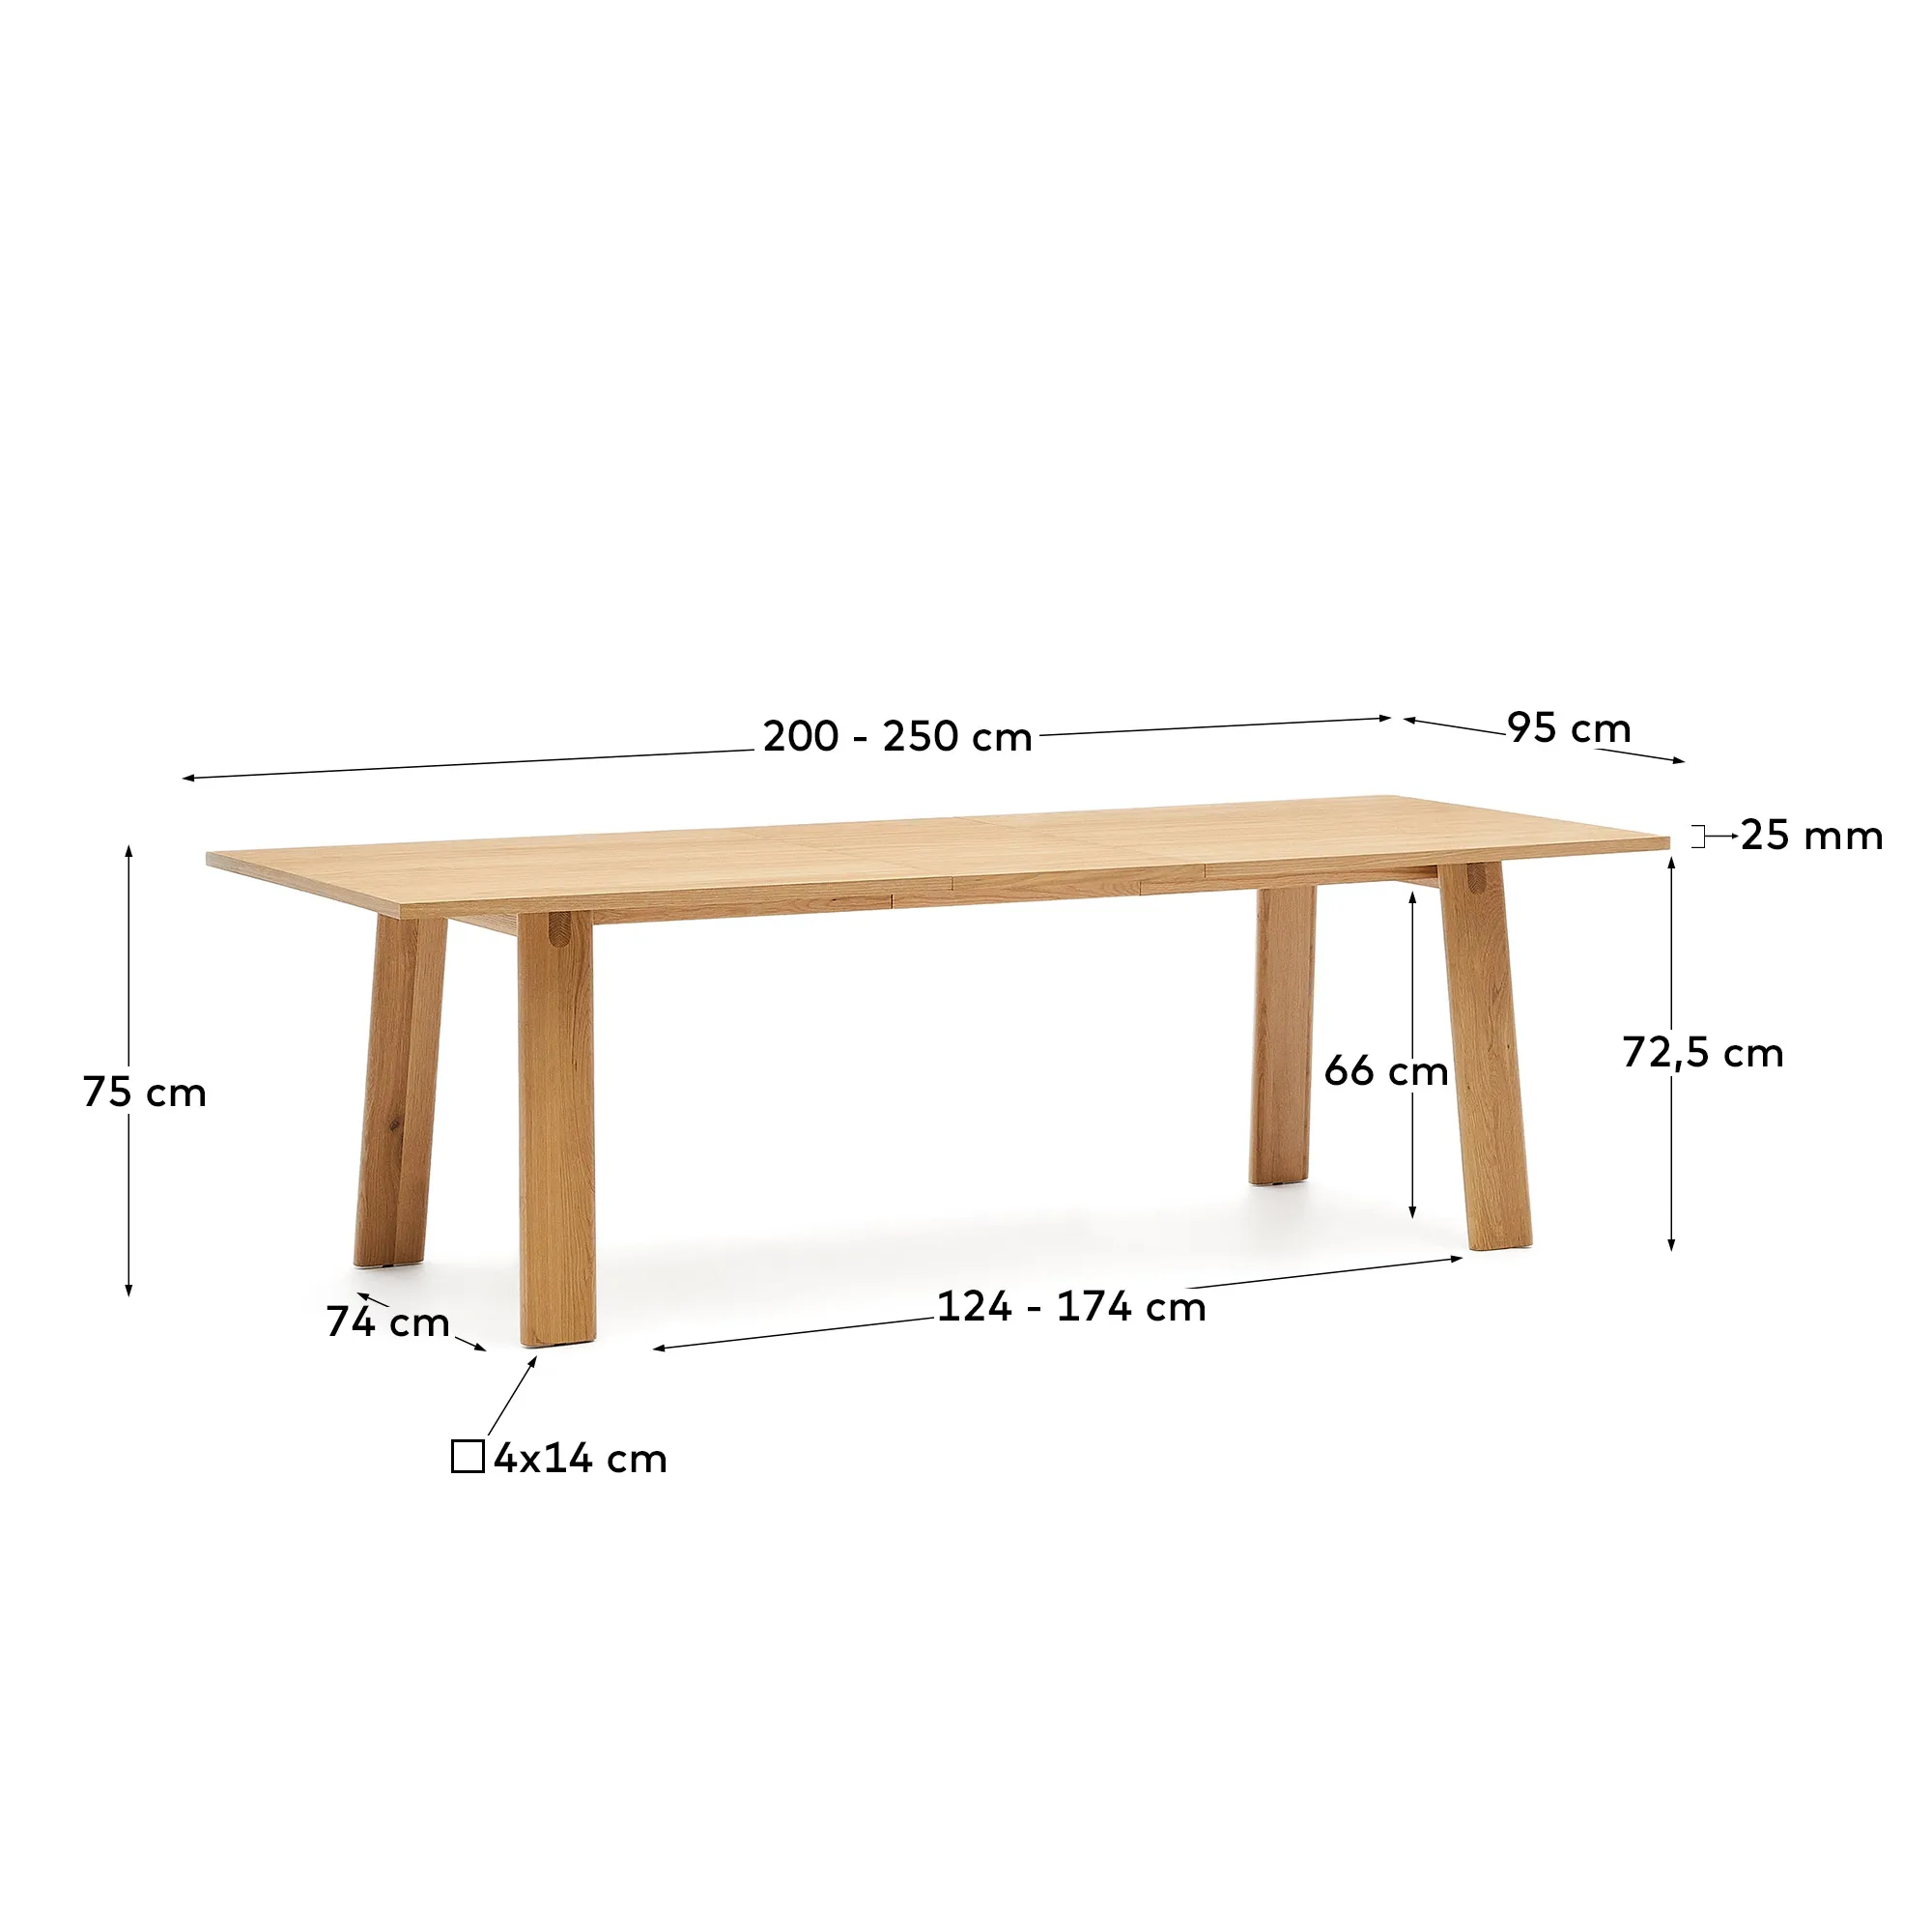 Раздвижной обеденный стол La Forma Arlen шпон дуба с натуральной отделкой 95х200-250 см 189965